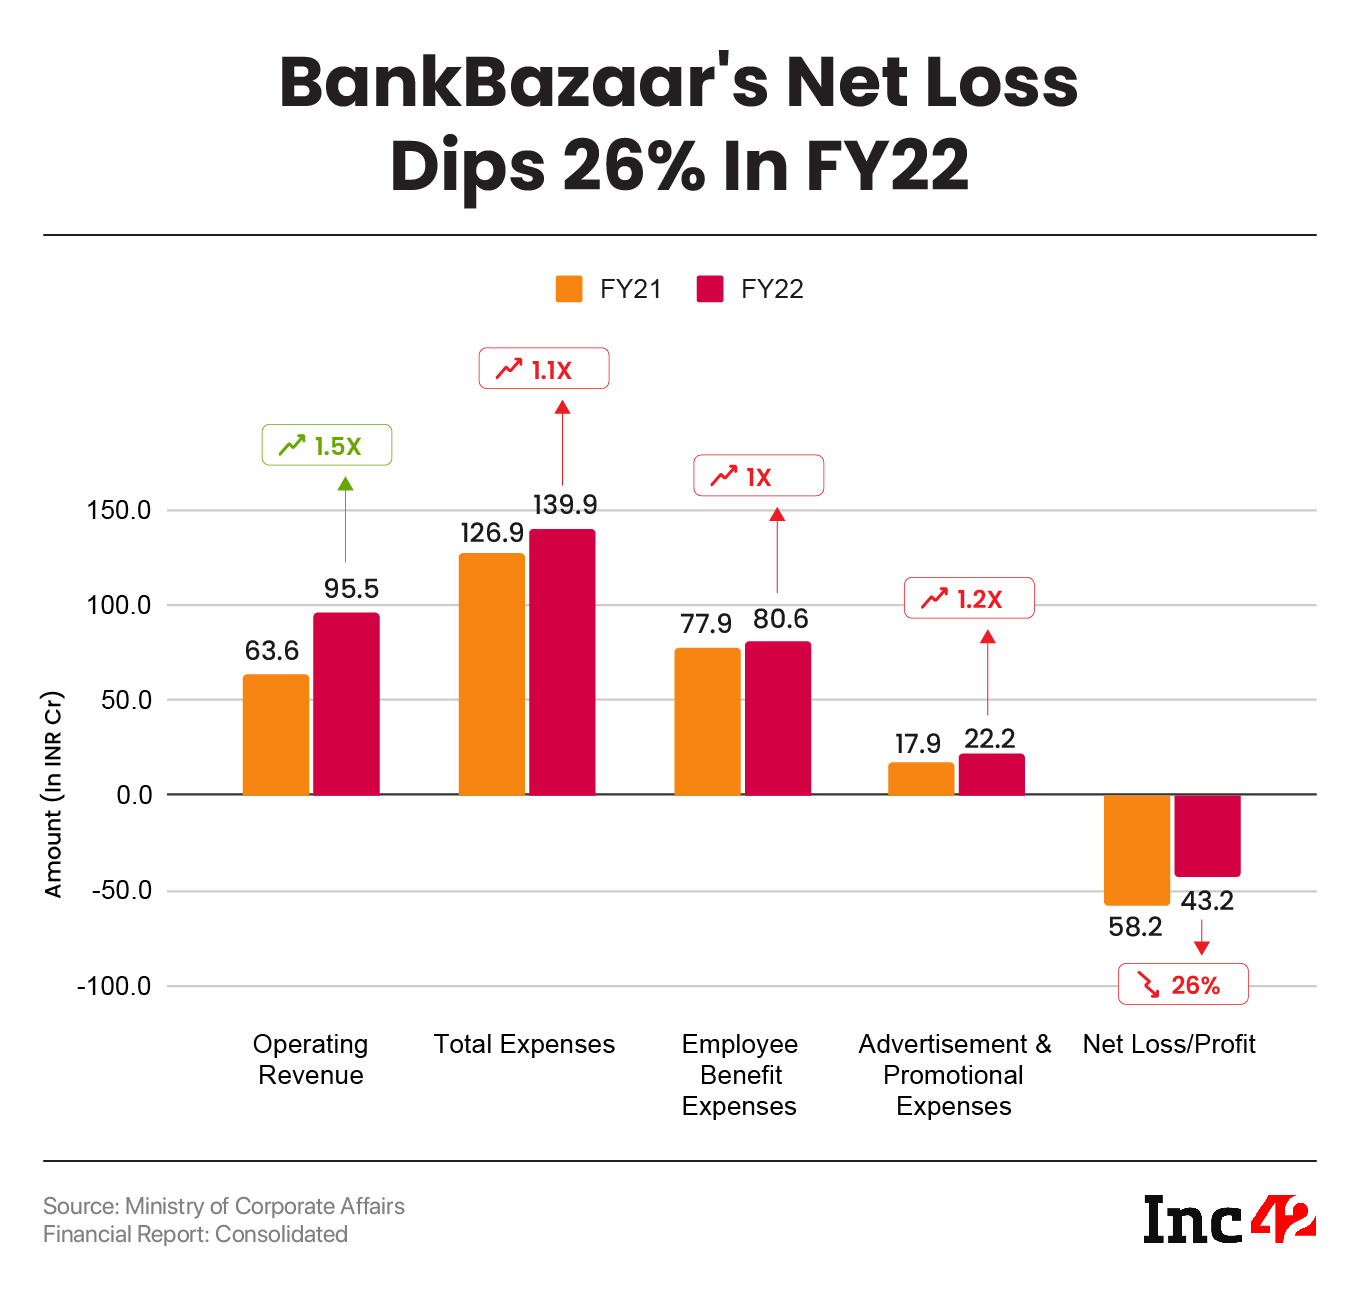 BankBazaar’s Net Loss Dips 26% To INR 43.2 Cr In FY22